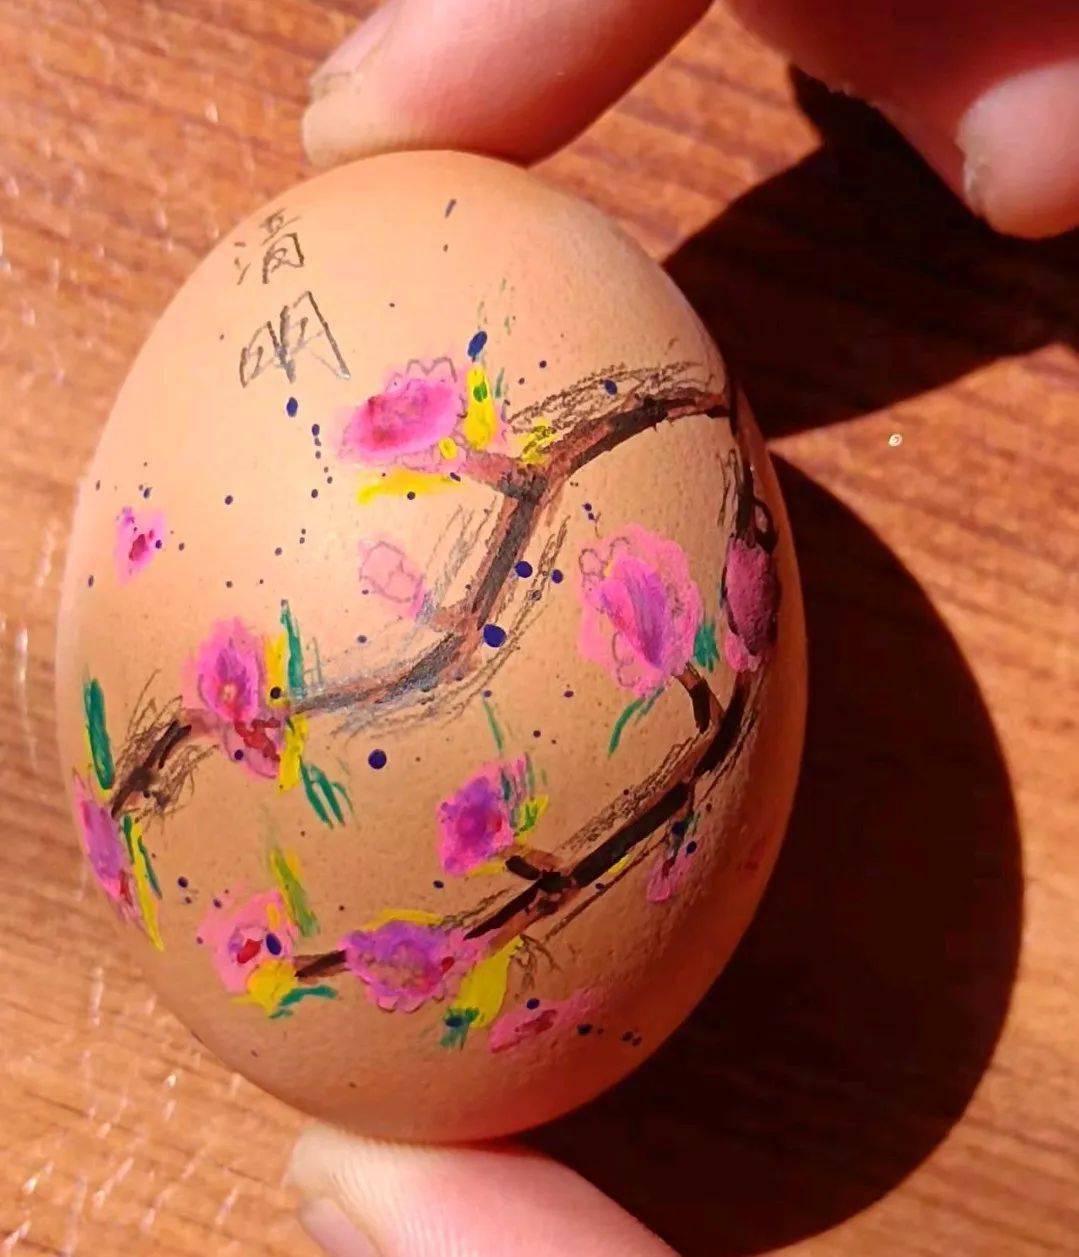 此次活动结合清明节的传统习俗,以手绘彩蛋为主题,通过绘画,激发了